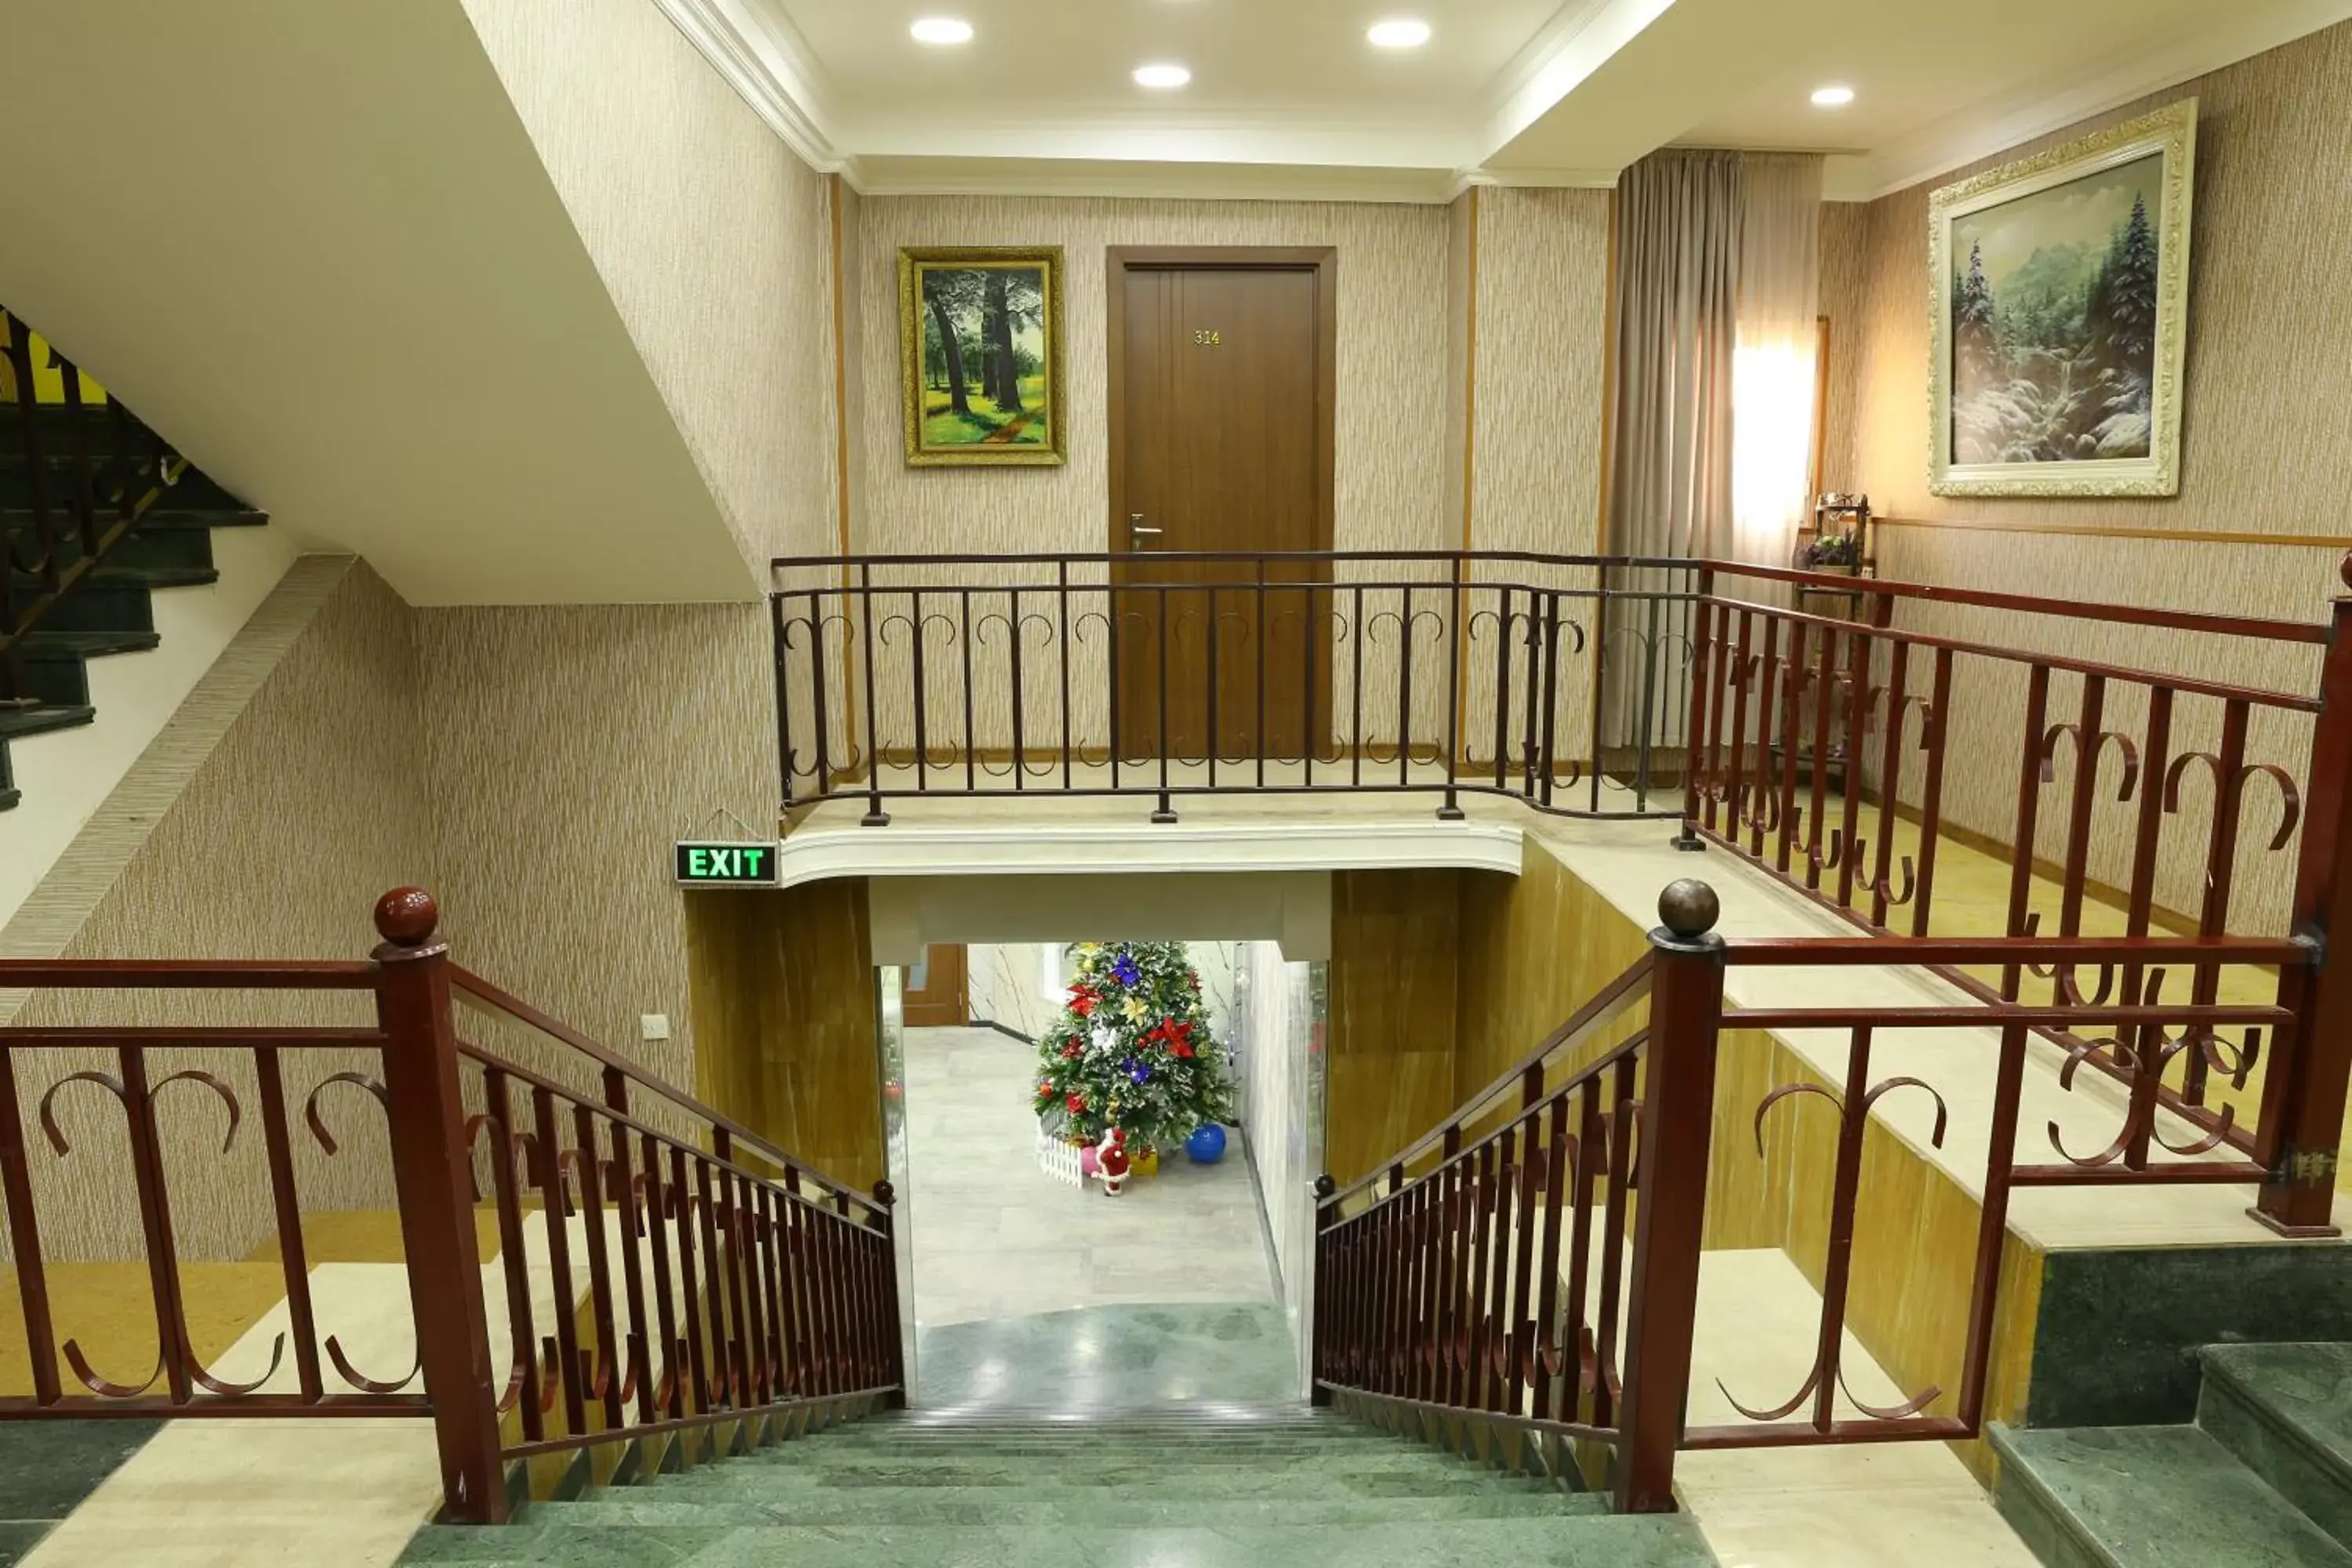 Lobby or reception in Dkd-bridge Hotel